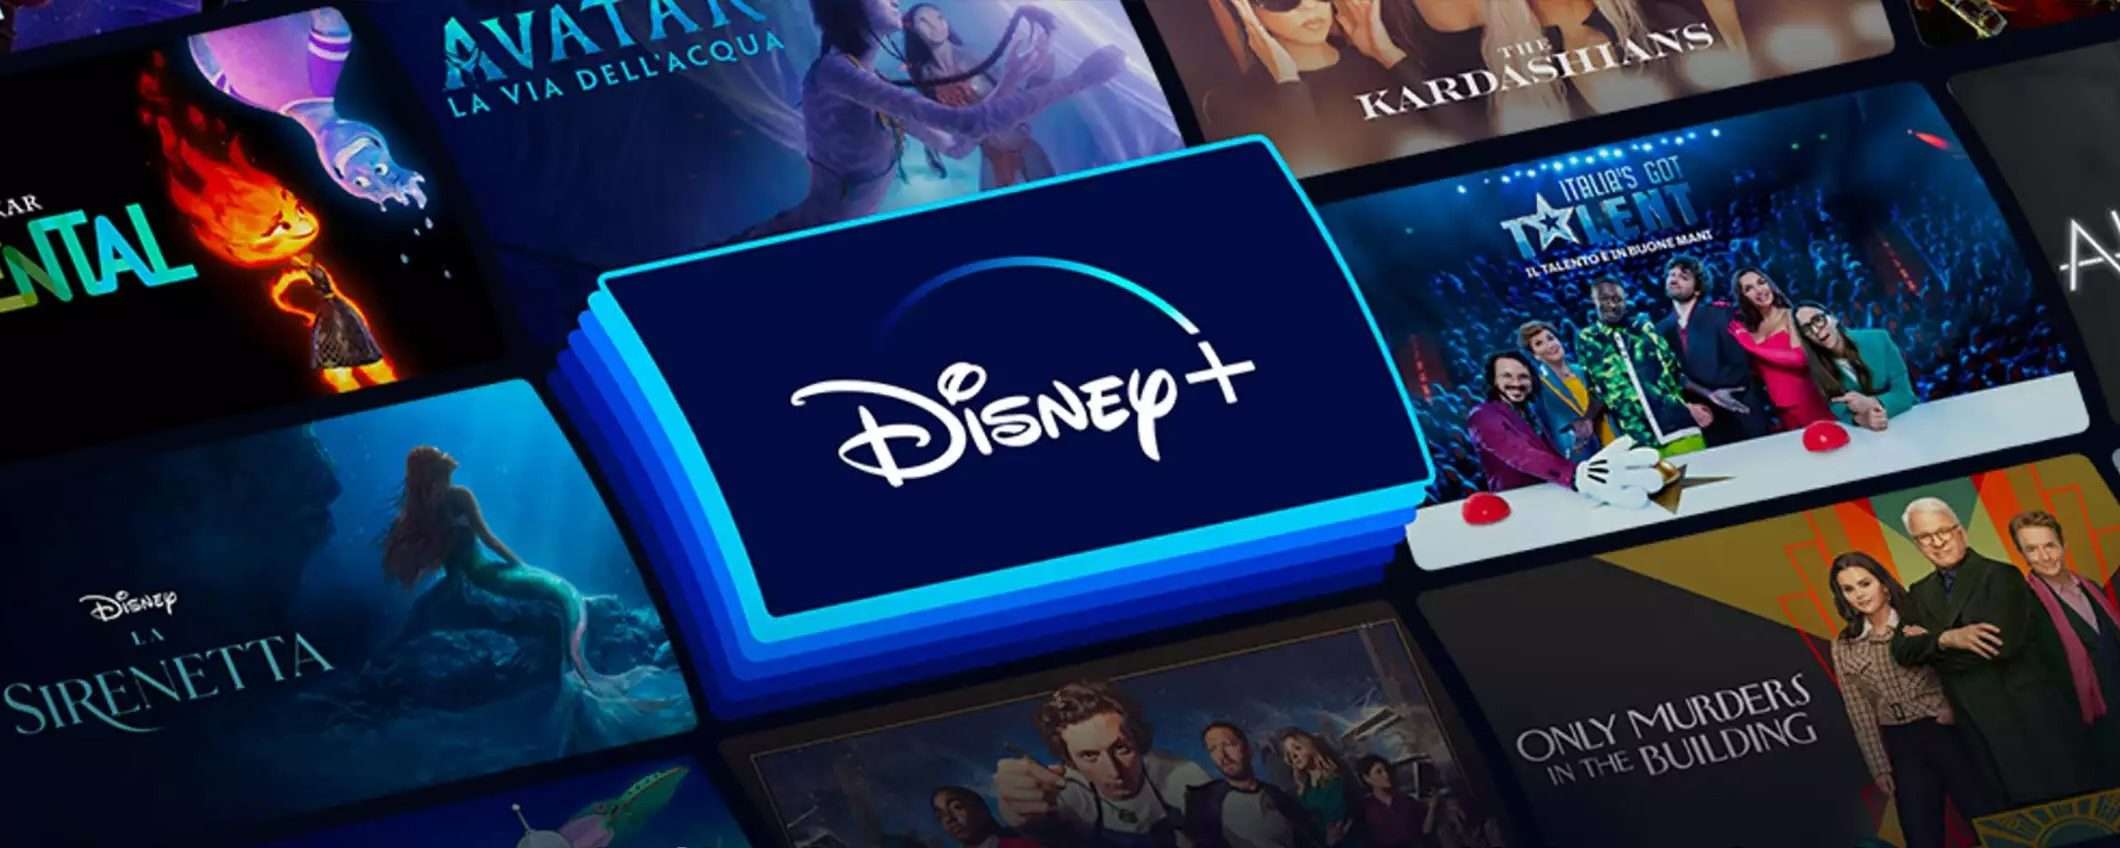 Disney+ senza pubblicità: quanto costa e come attivare oggi il servizio